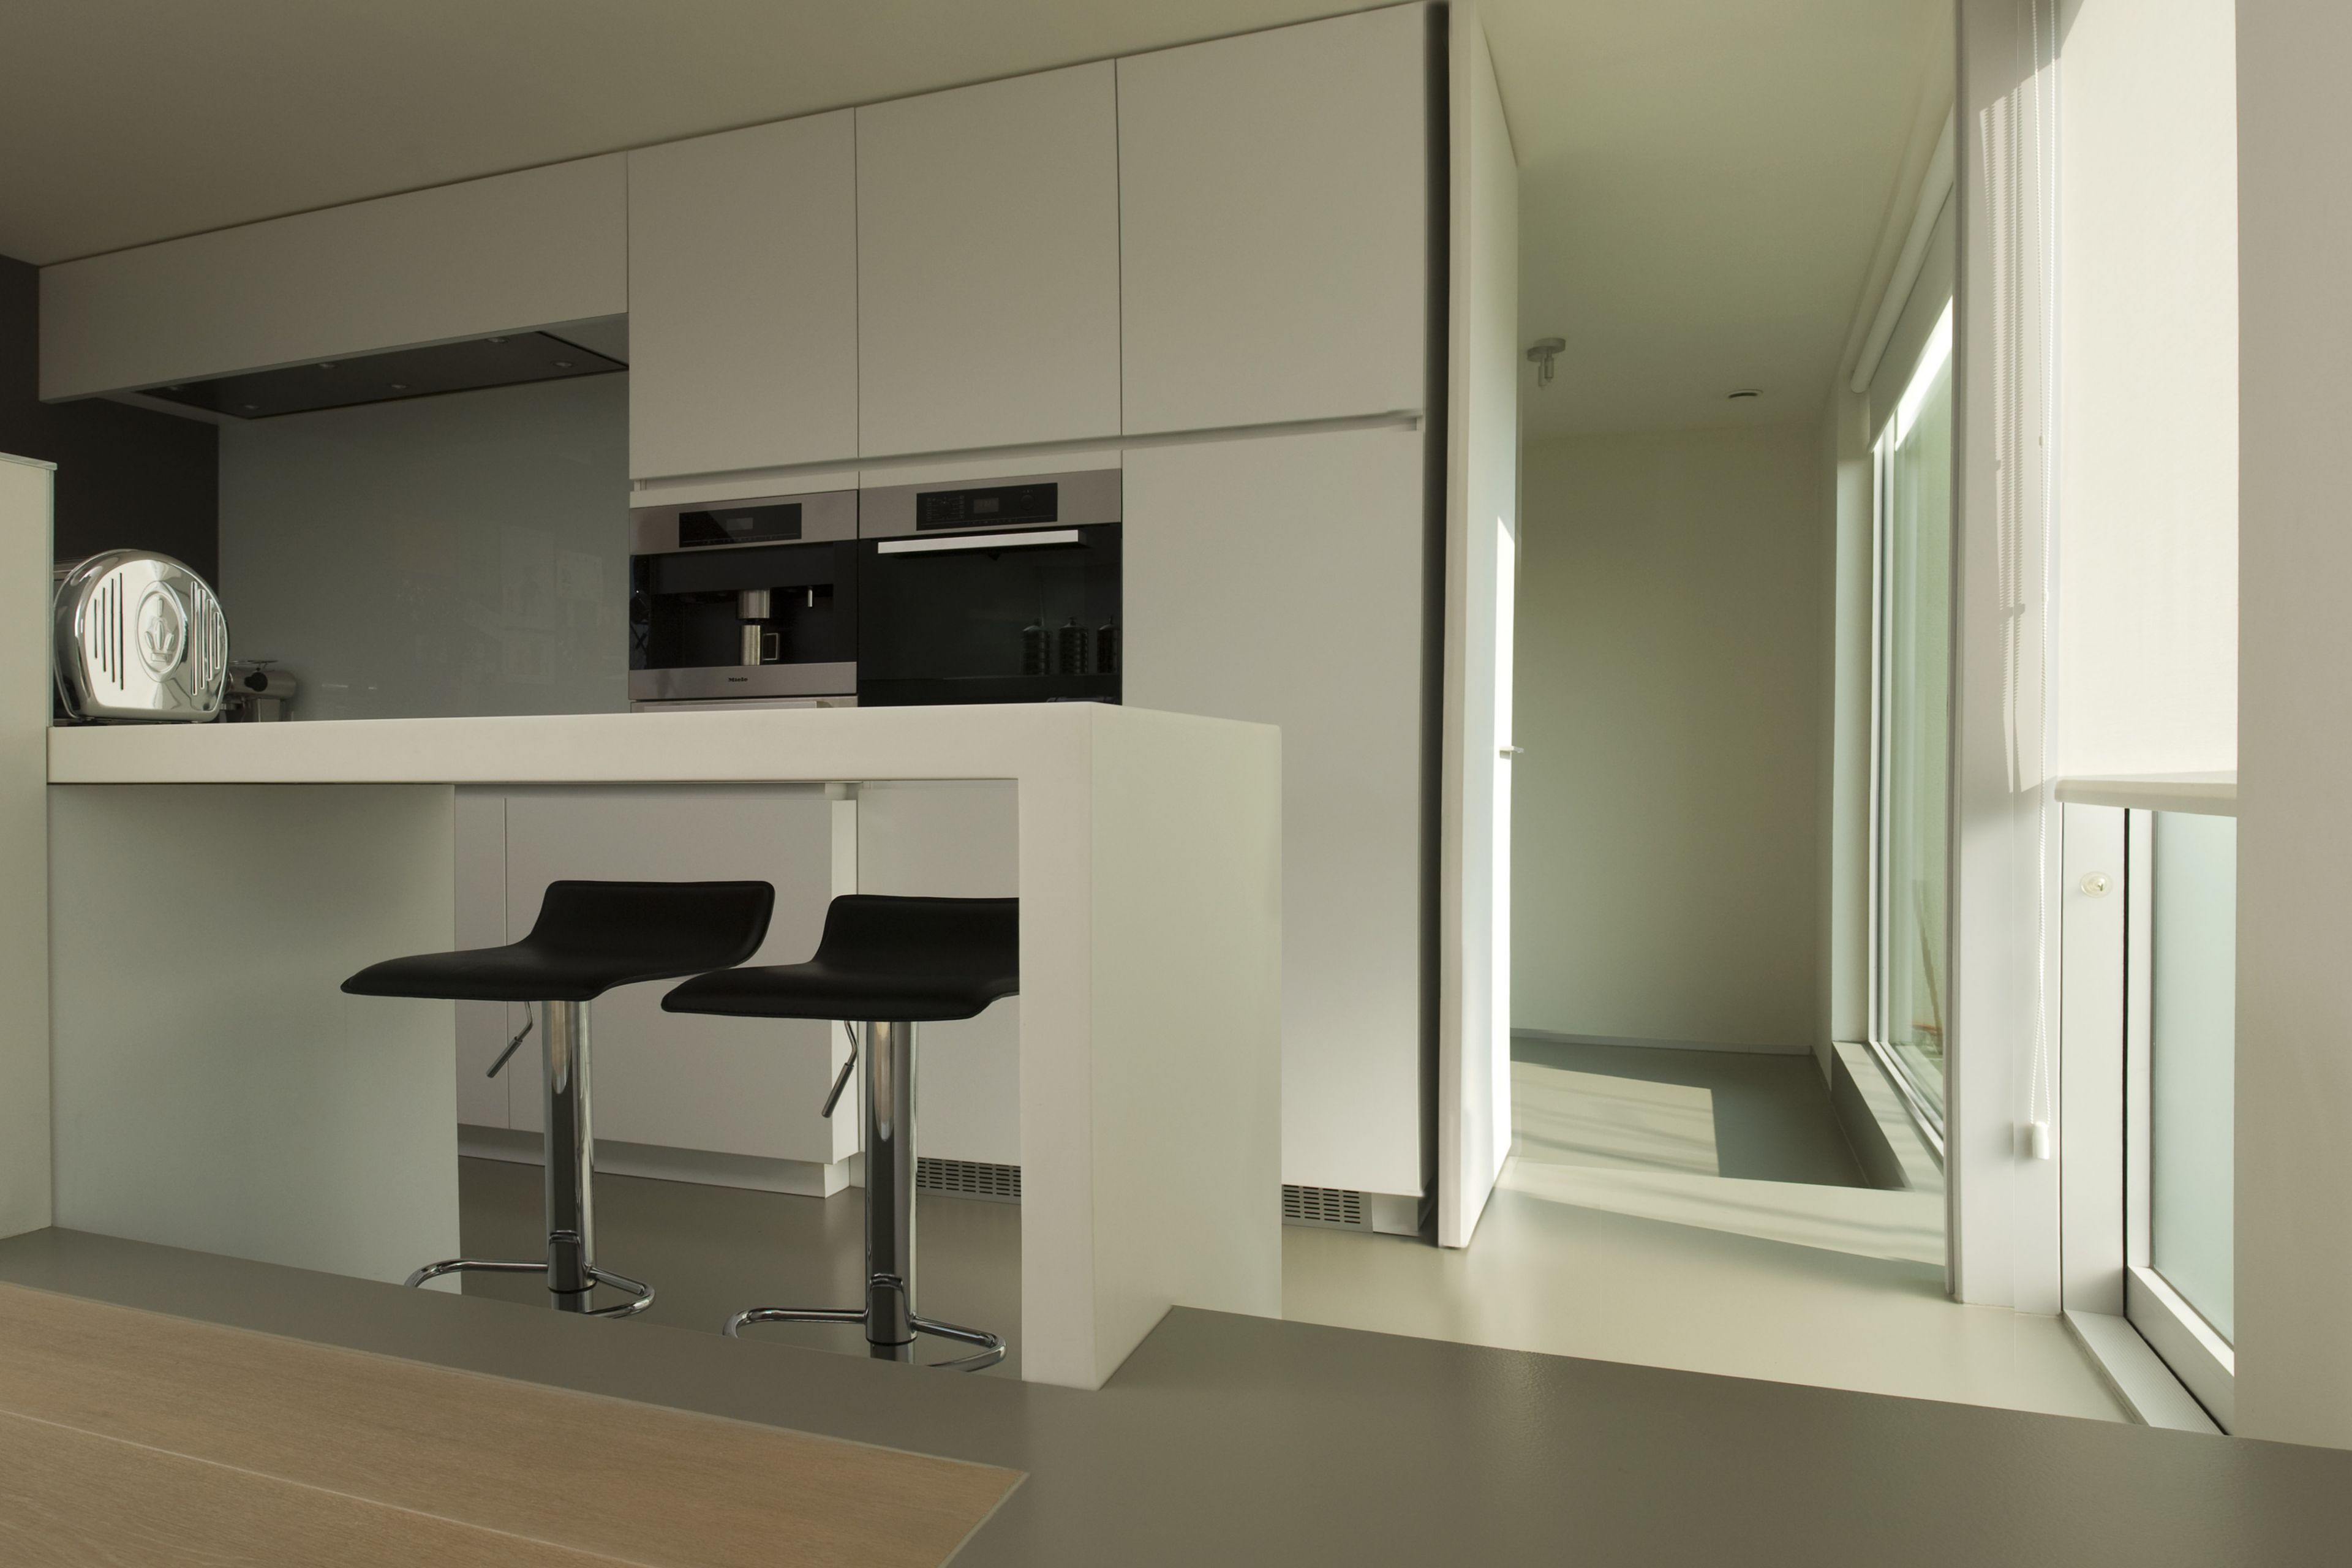 Sika ComfortFloor® grey floor in modern home kitchen with island